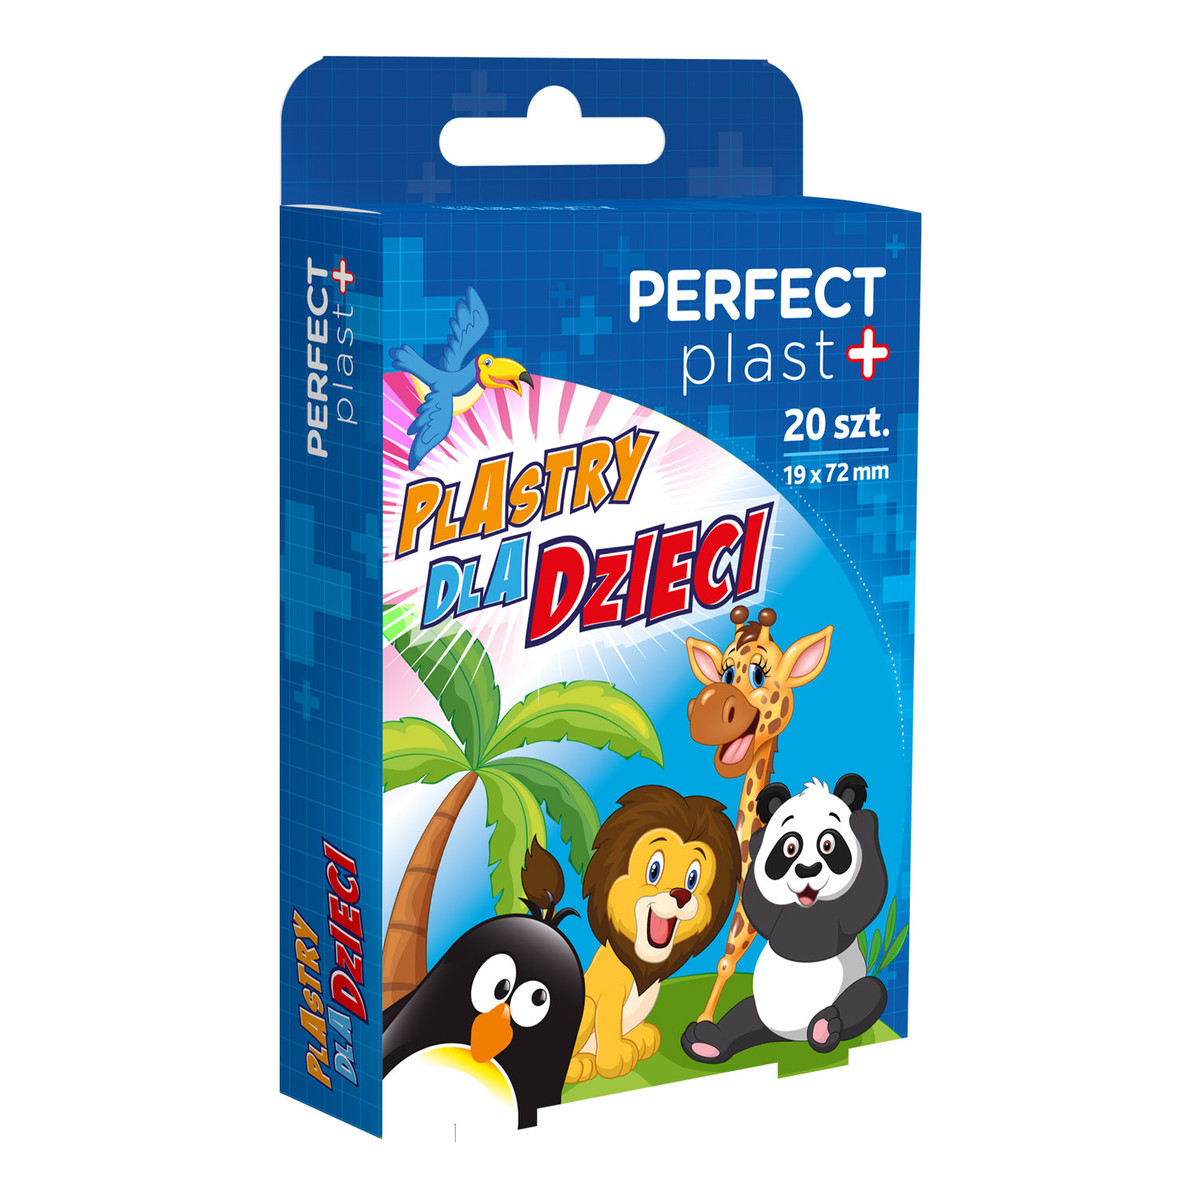 Perfect Plast Kids ZOO plastry opatrunkowe dla dzieci 20szt